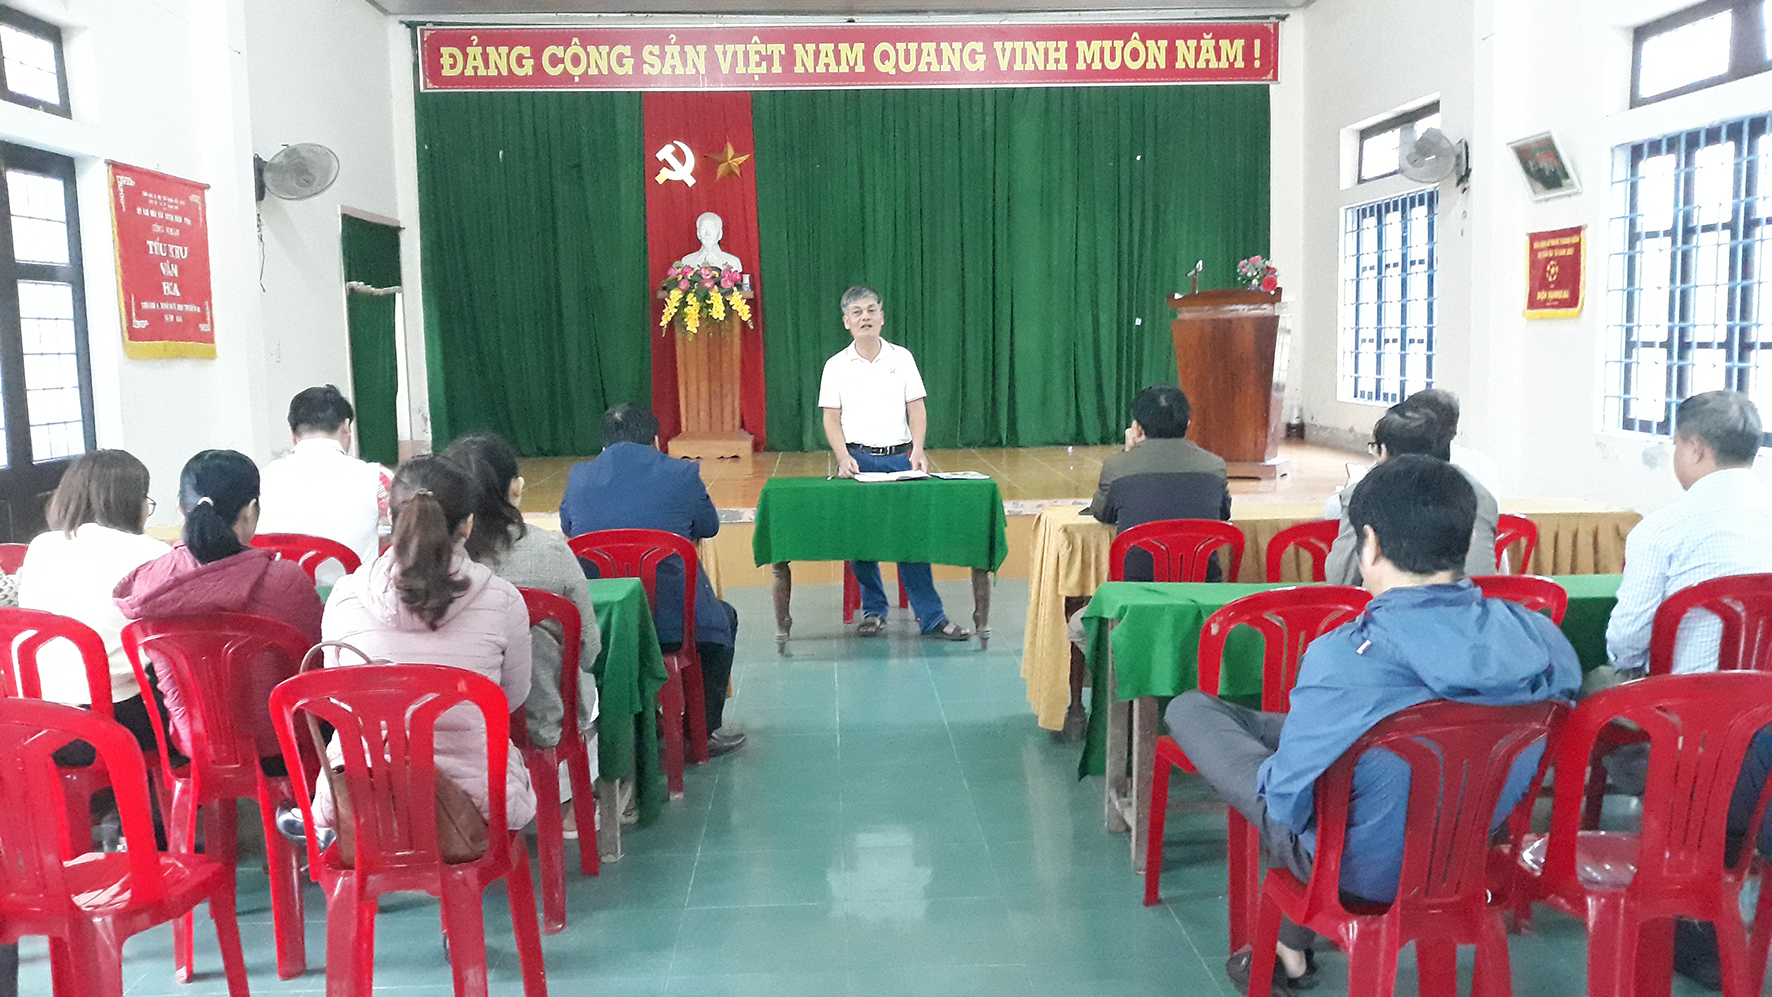 Chú trọng xây dựng Đảng bộ huyện Triệu Phong trong sạch, vững mạnh